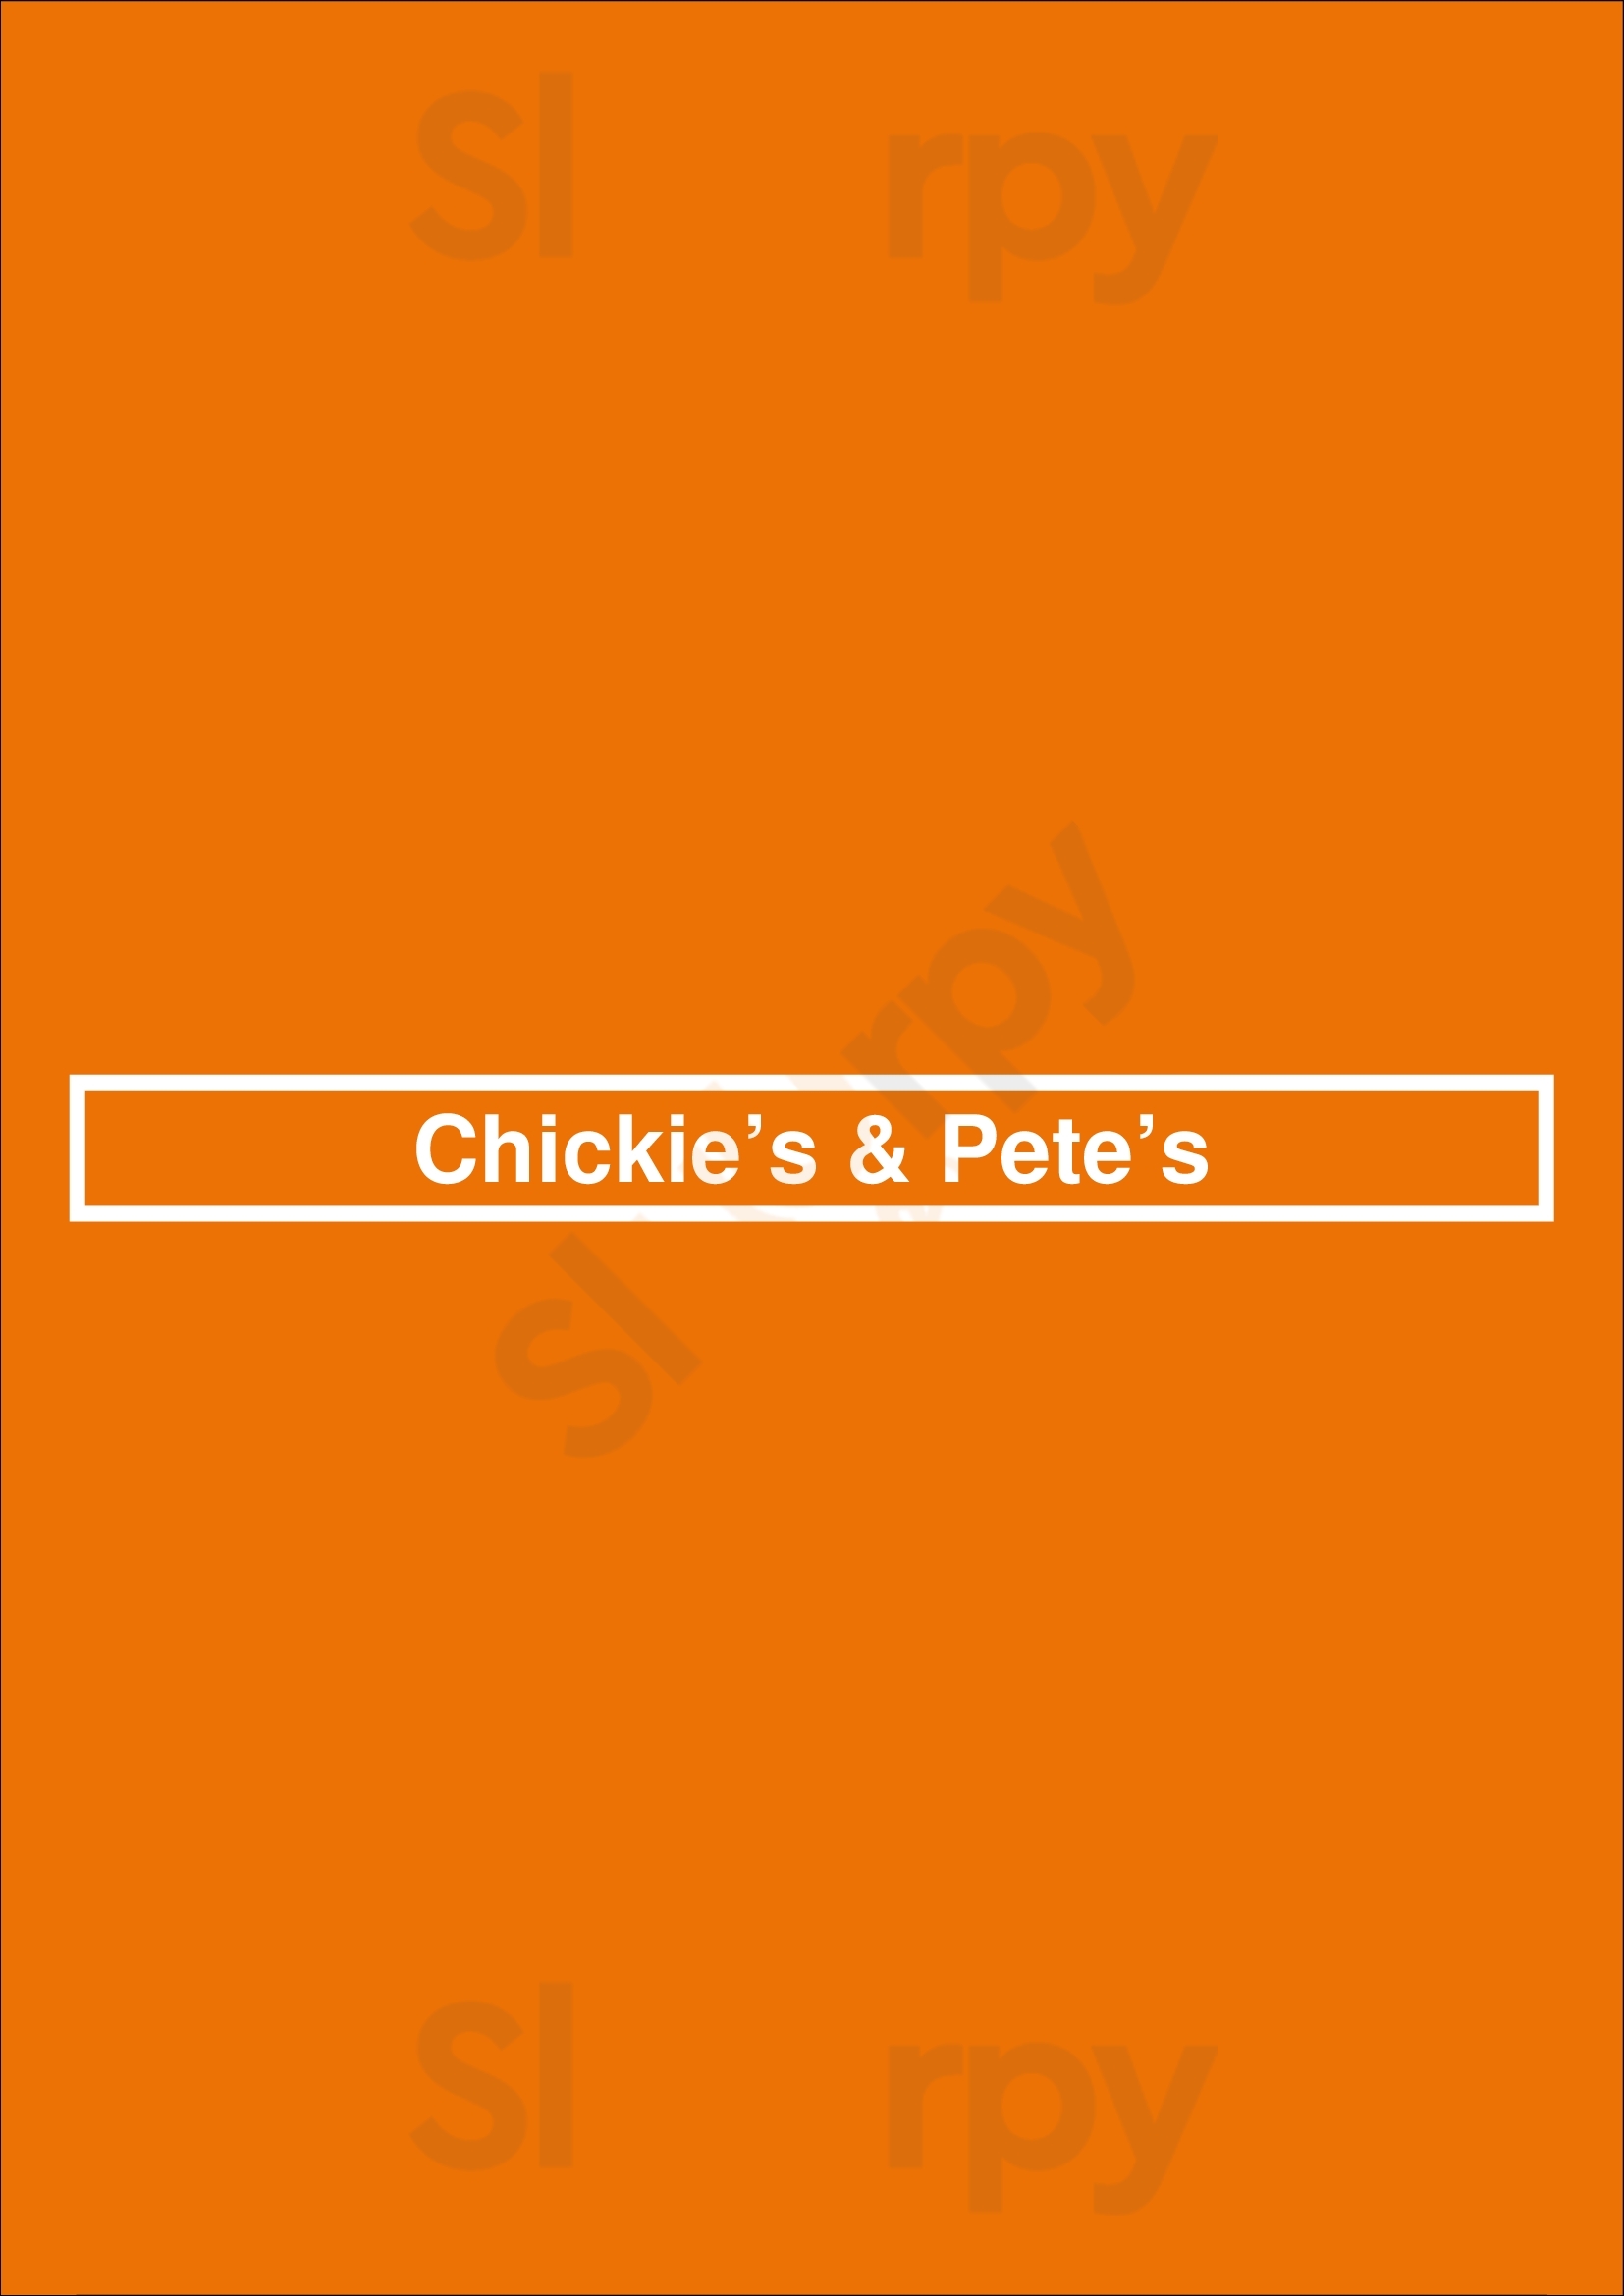 Chickie’s & Pete’s Philadelphia Menu - 1